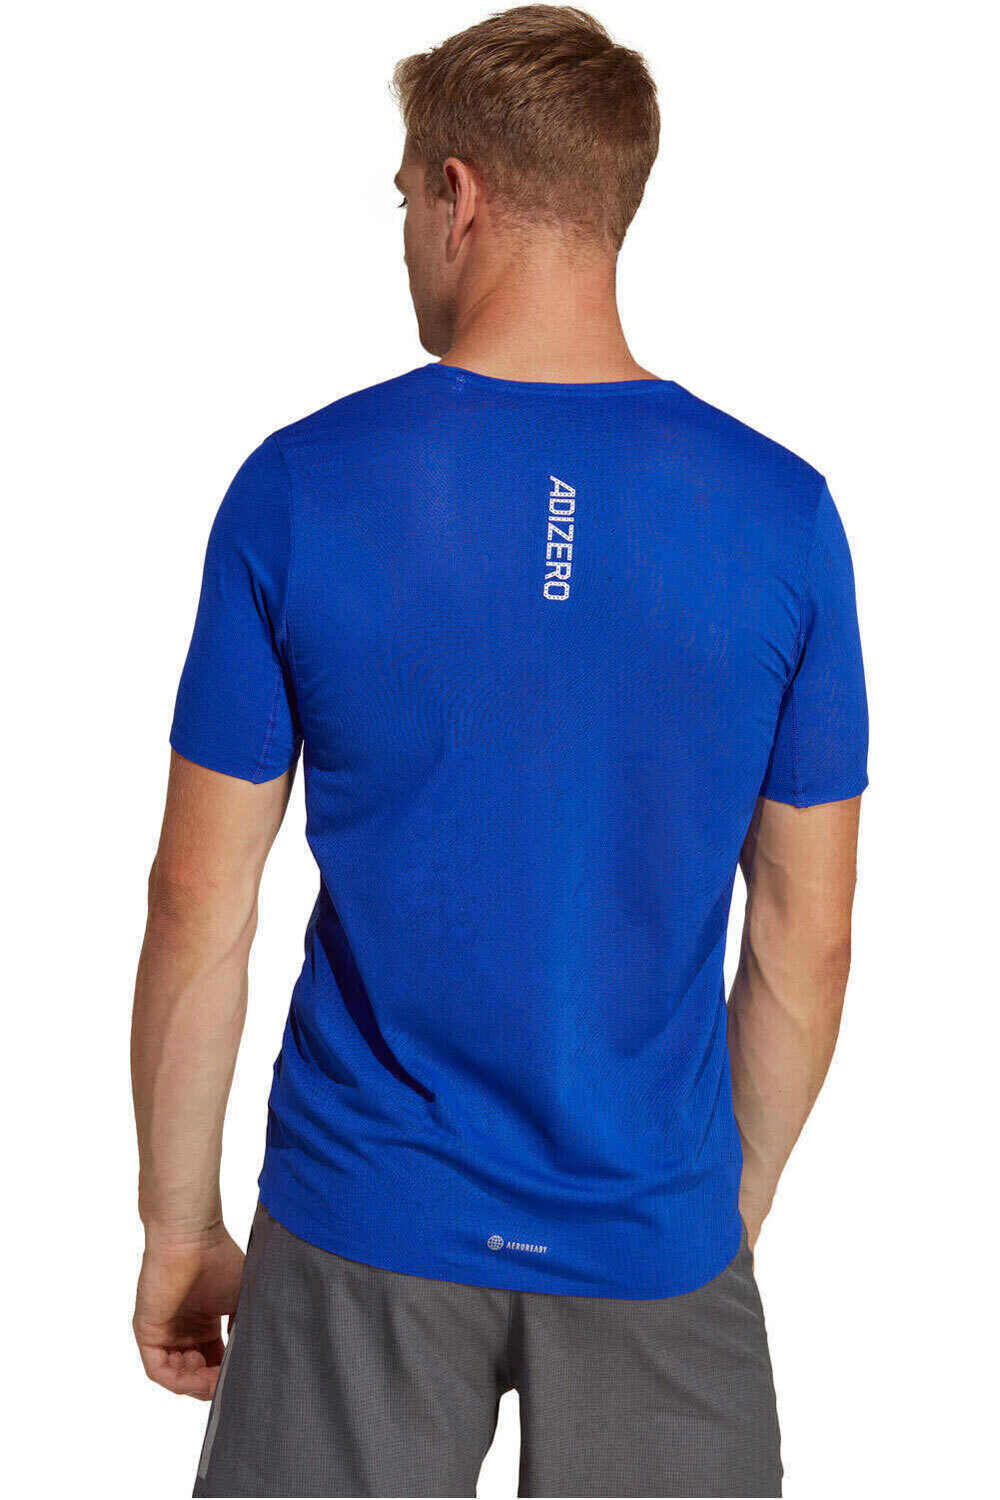 Comprar en oferta Adidas Adizero T-Shirt (HN8008) blue